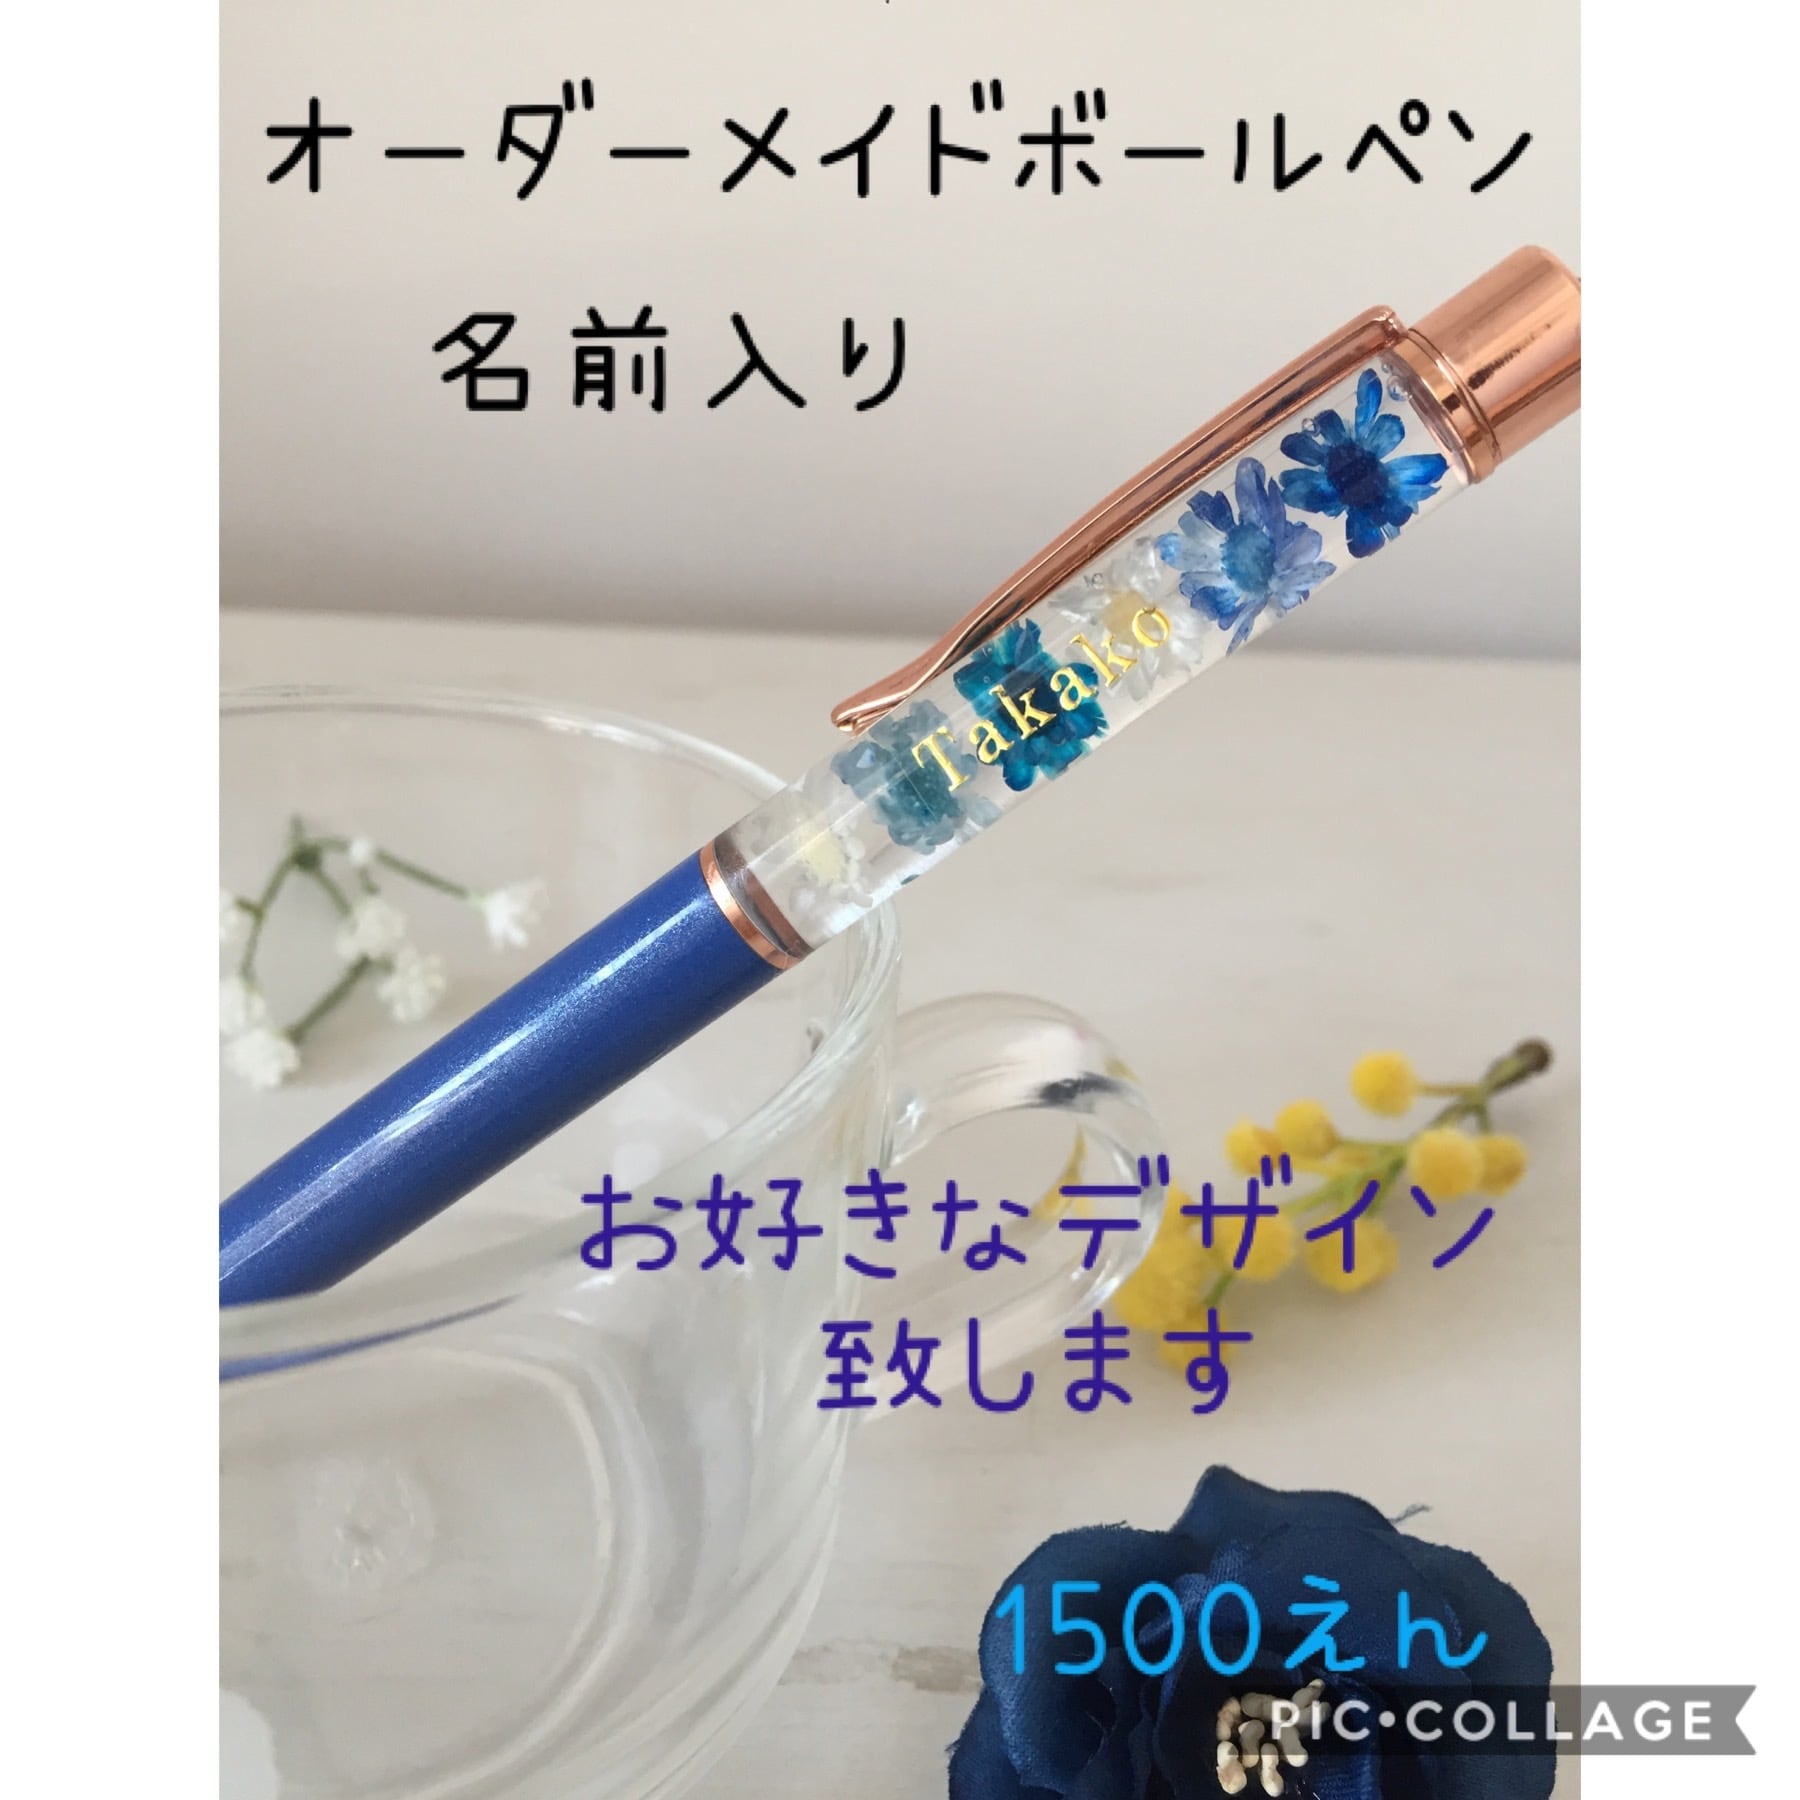 絶品 ☆オーダー☆ハーバリウム ボールペン | artfive.co.jp